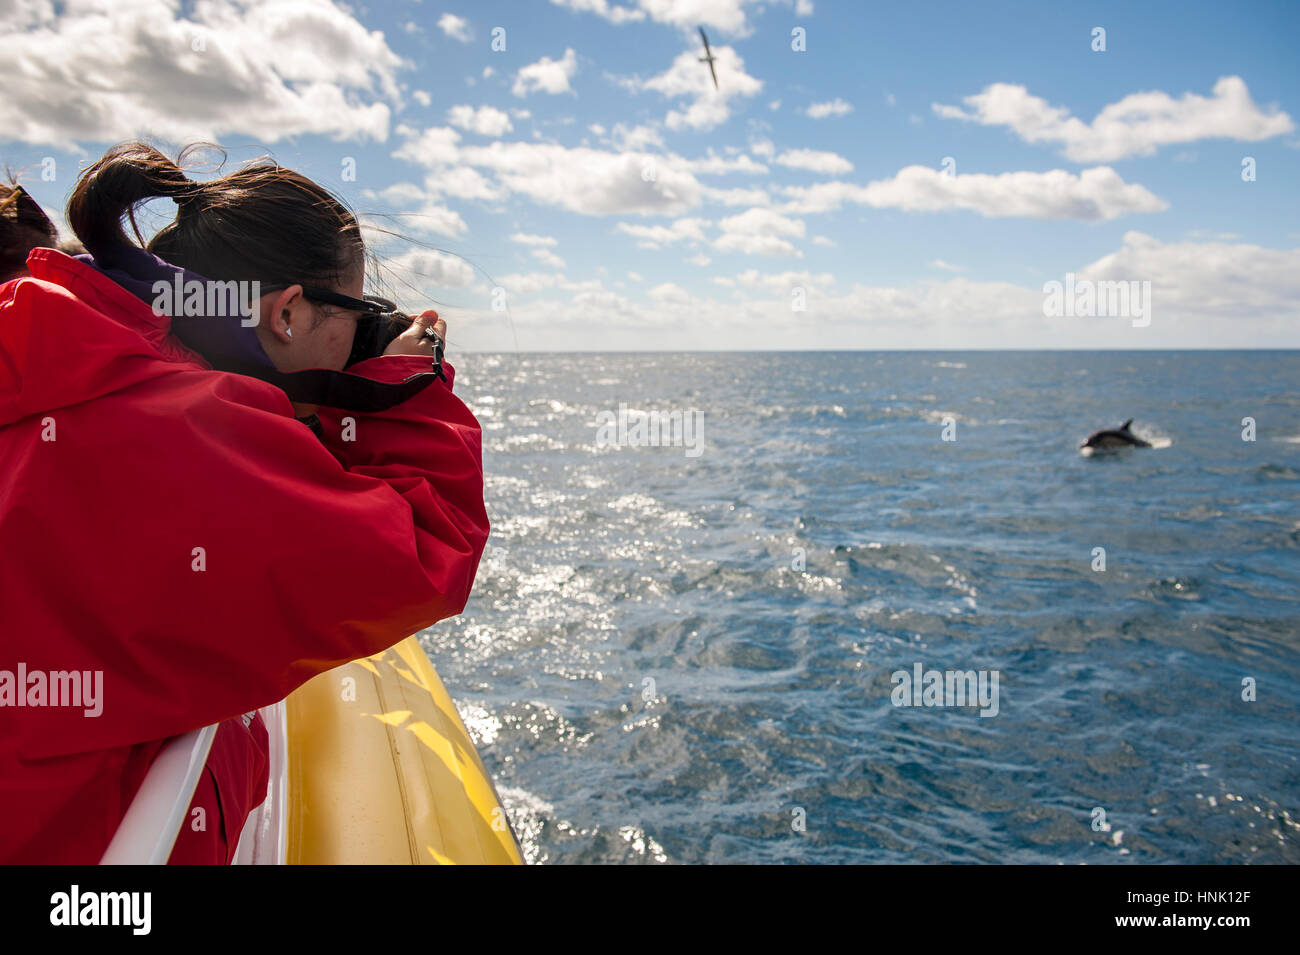 Les touristes photographier les dauphins au large de la côte de la péninsule de Tasman. Les touristes sont sur une croisière avec pennicott Wilderness Journeys. Banque D'Images